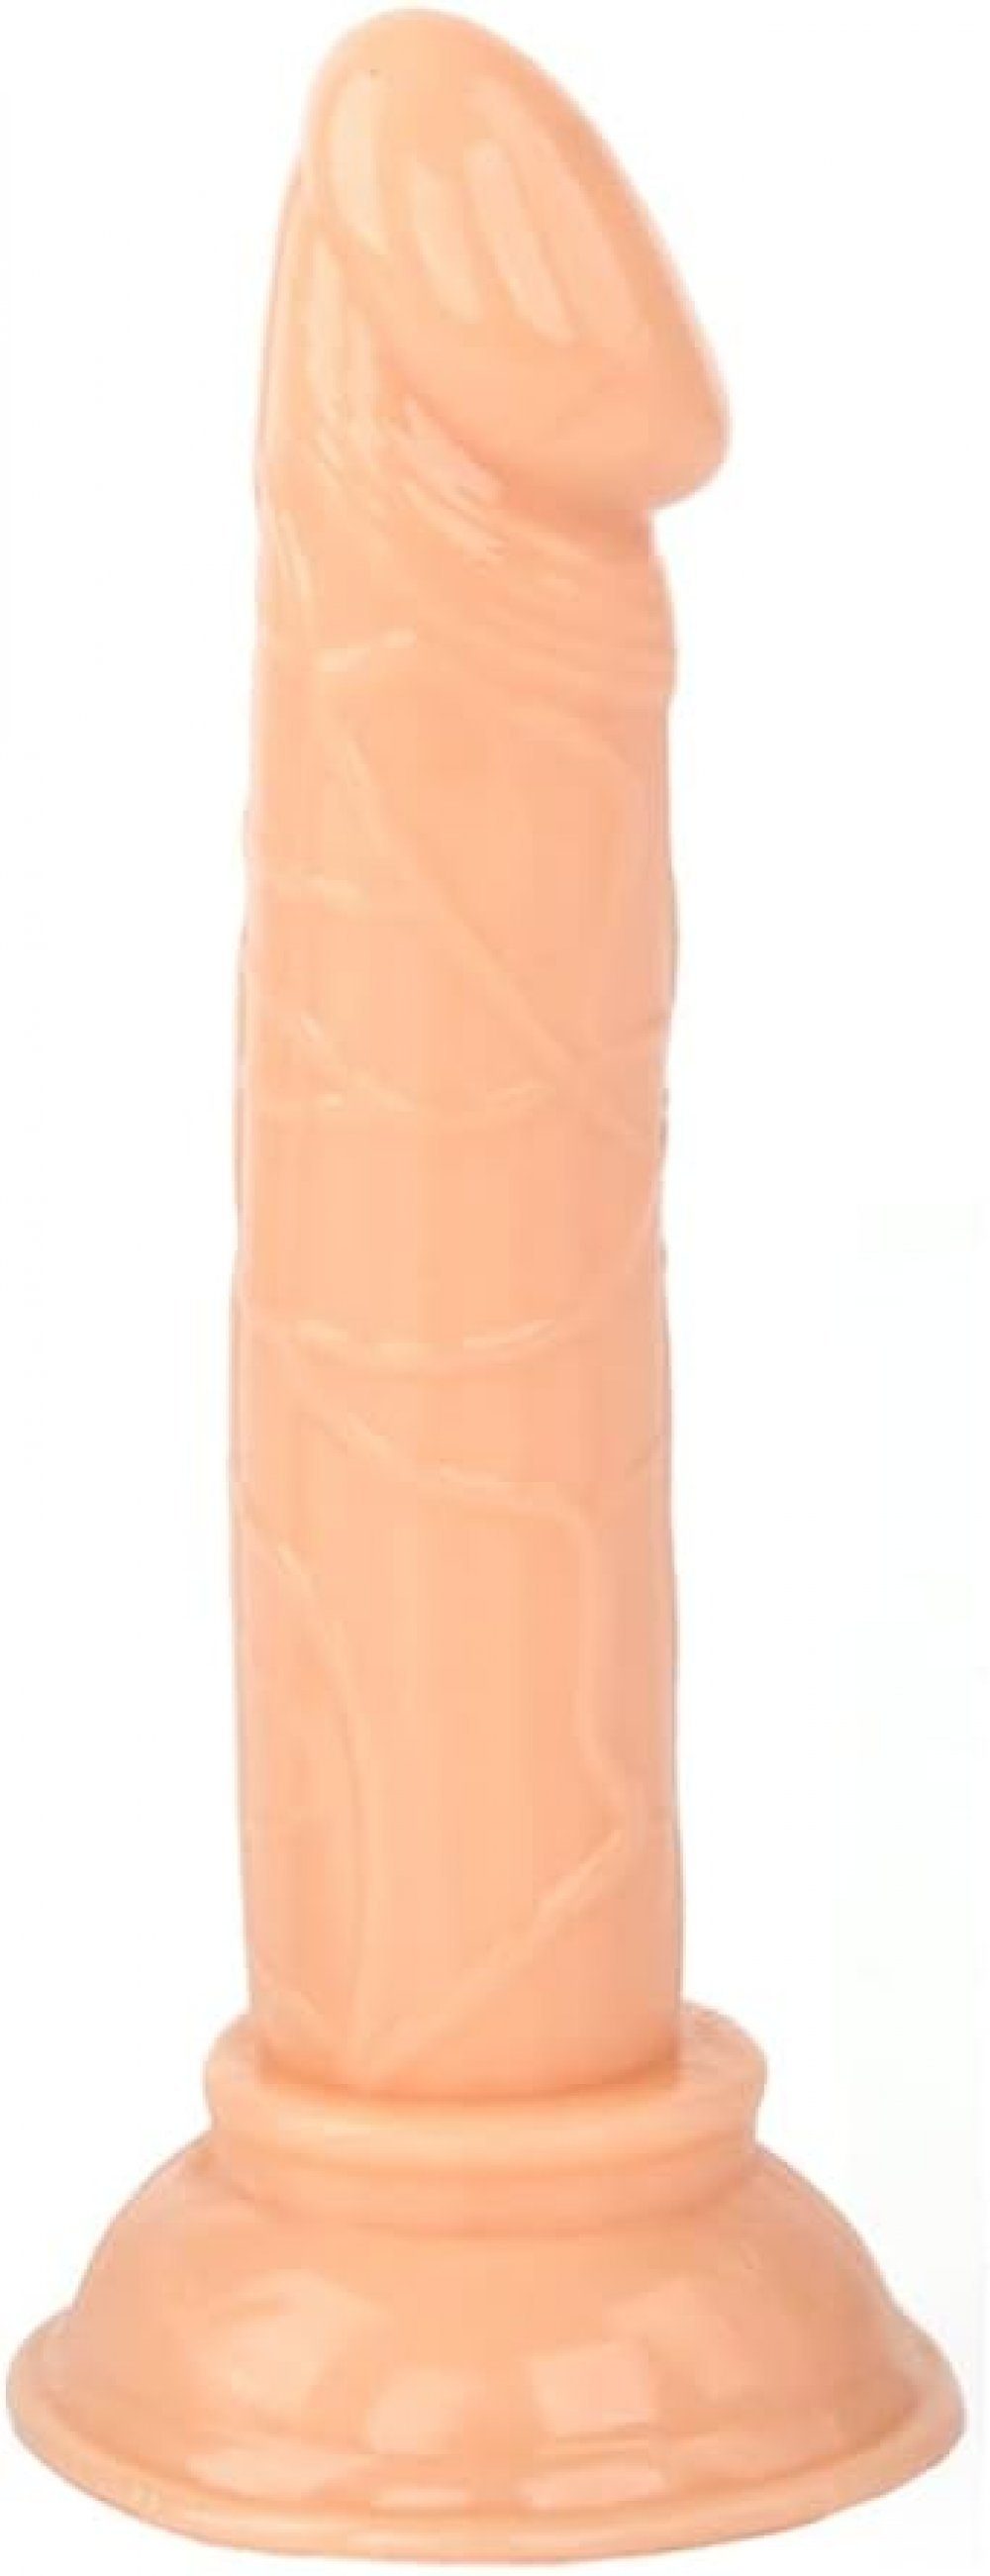 VOCTVTB Penishülle Mini Realistischer Dildo, 14cm Dildo Sexspielzeug mit Starkem Saugnapf Fleischfarben